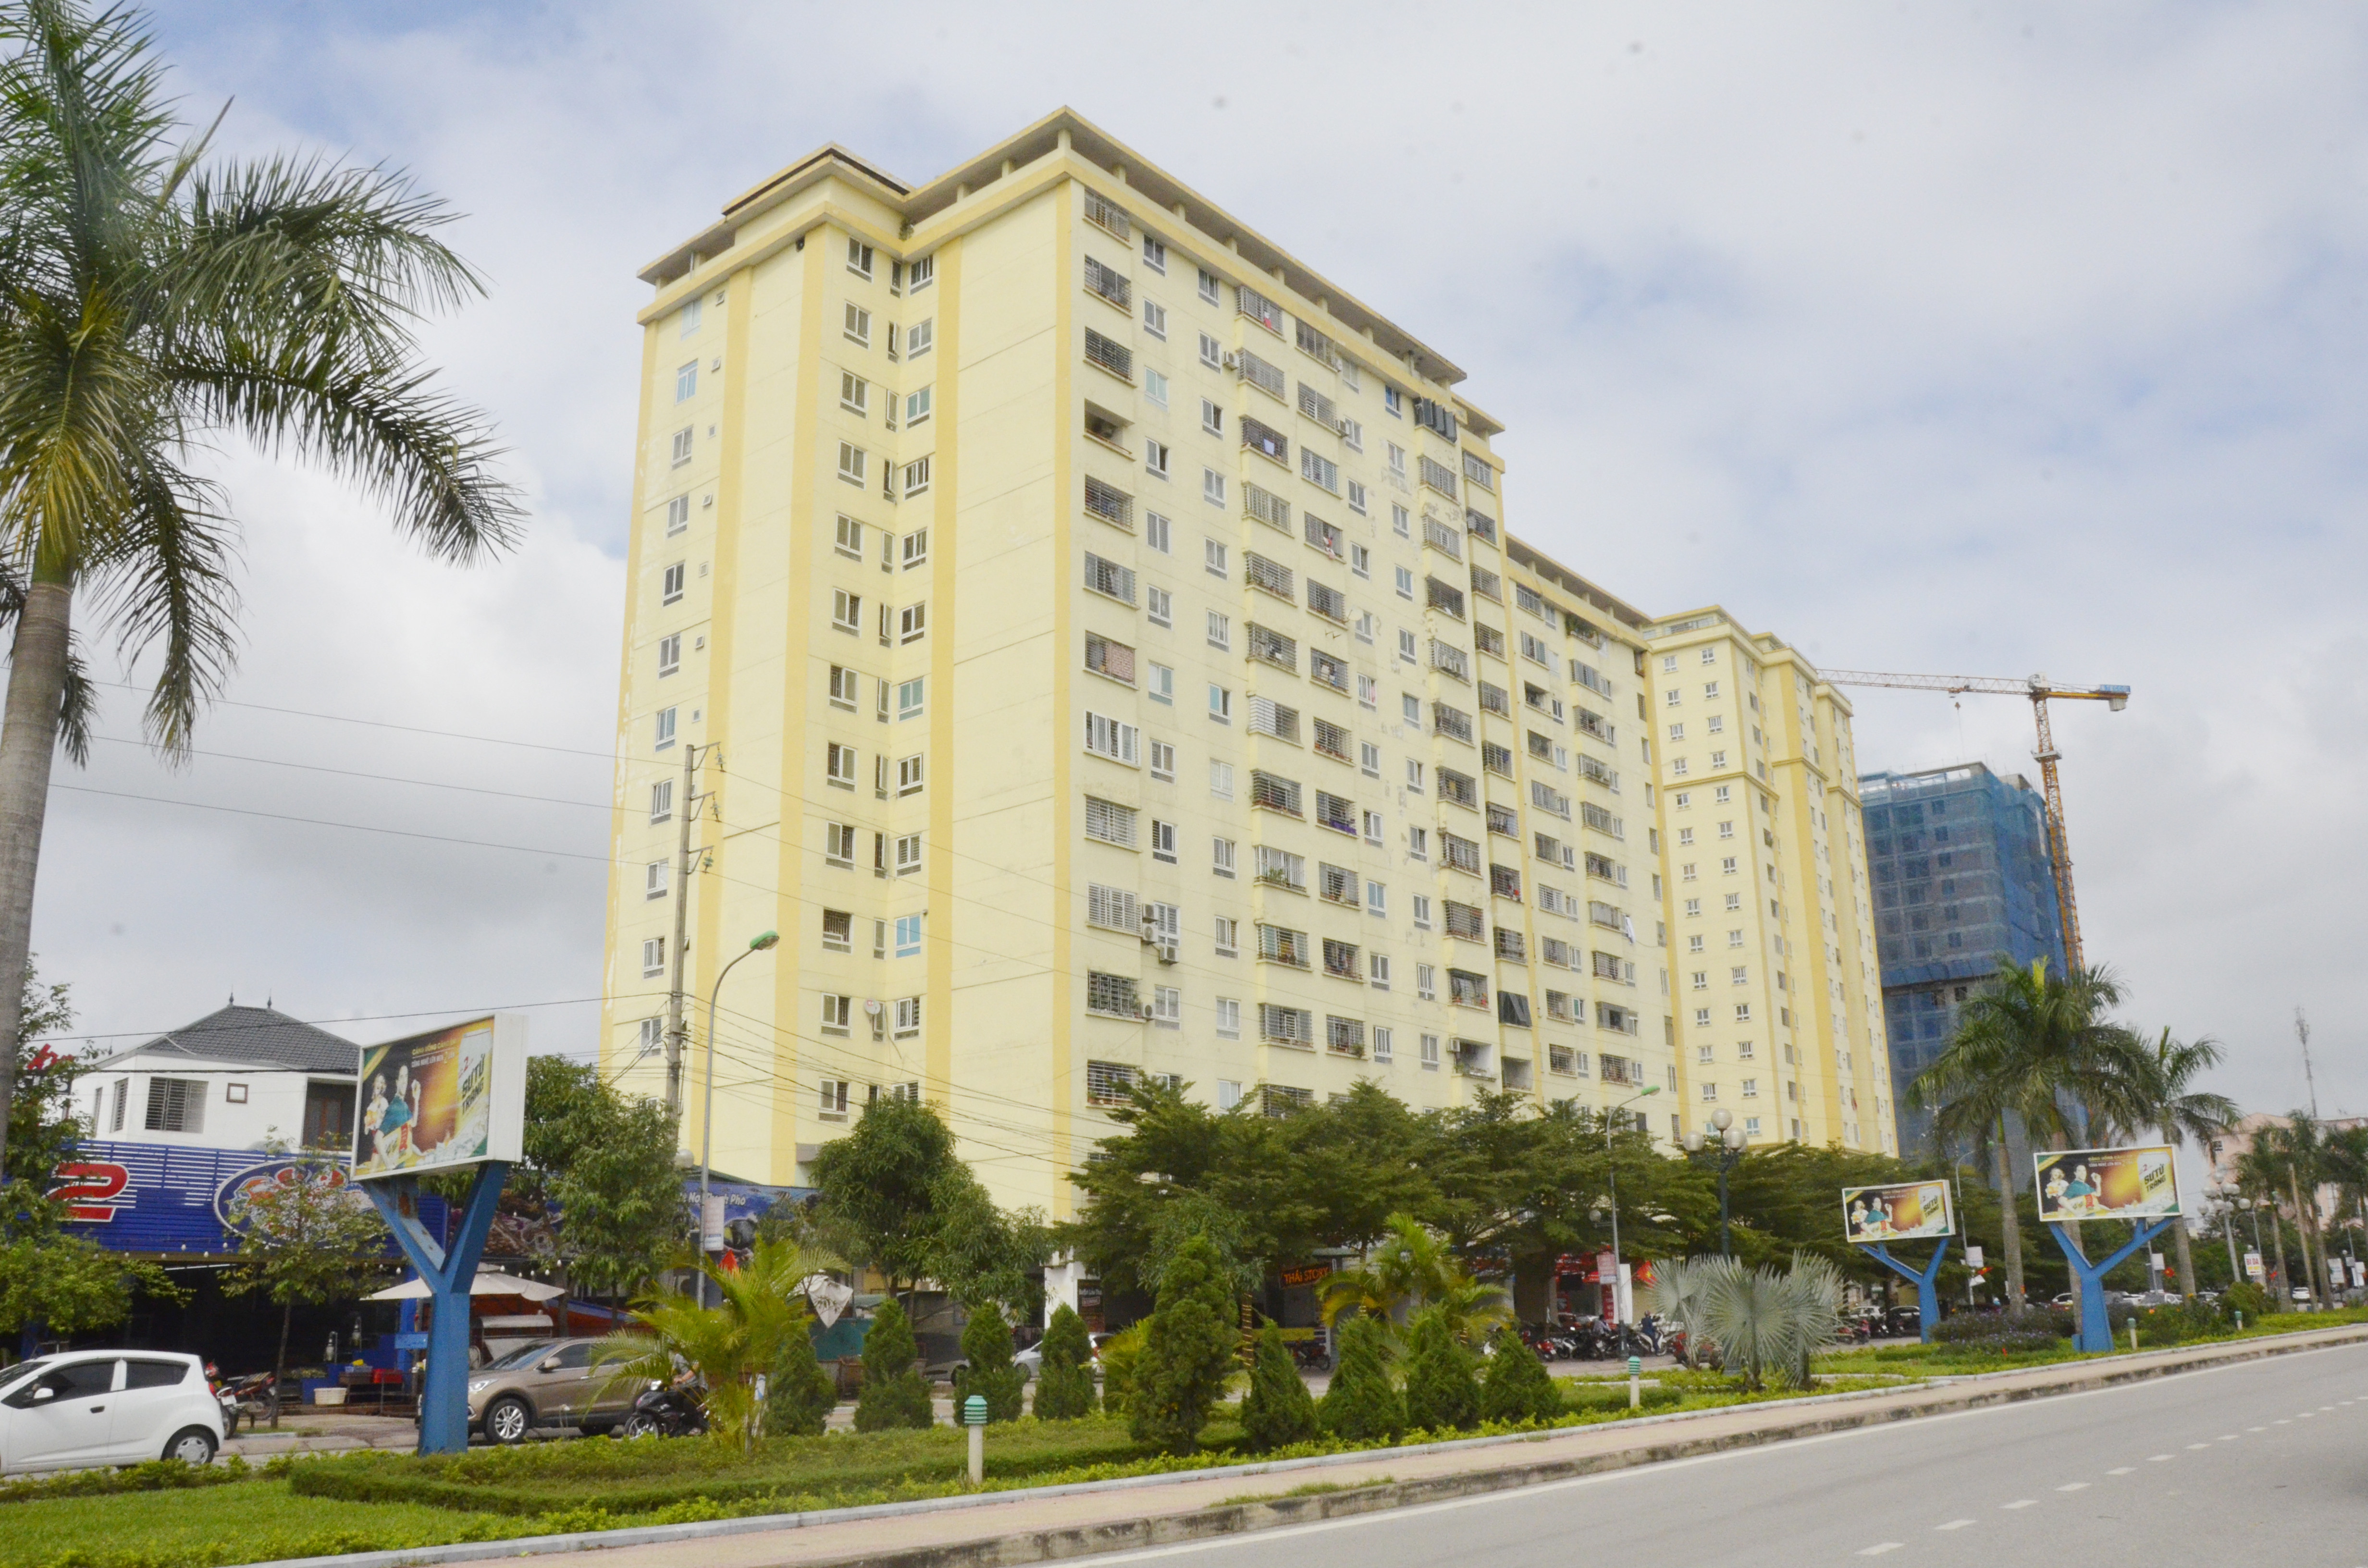 Phường Vinh Tân (Thành phố Vinh) địa phương có nhiều dự án chung cư cao tầng. Ảnh: Thanh Lê